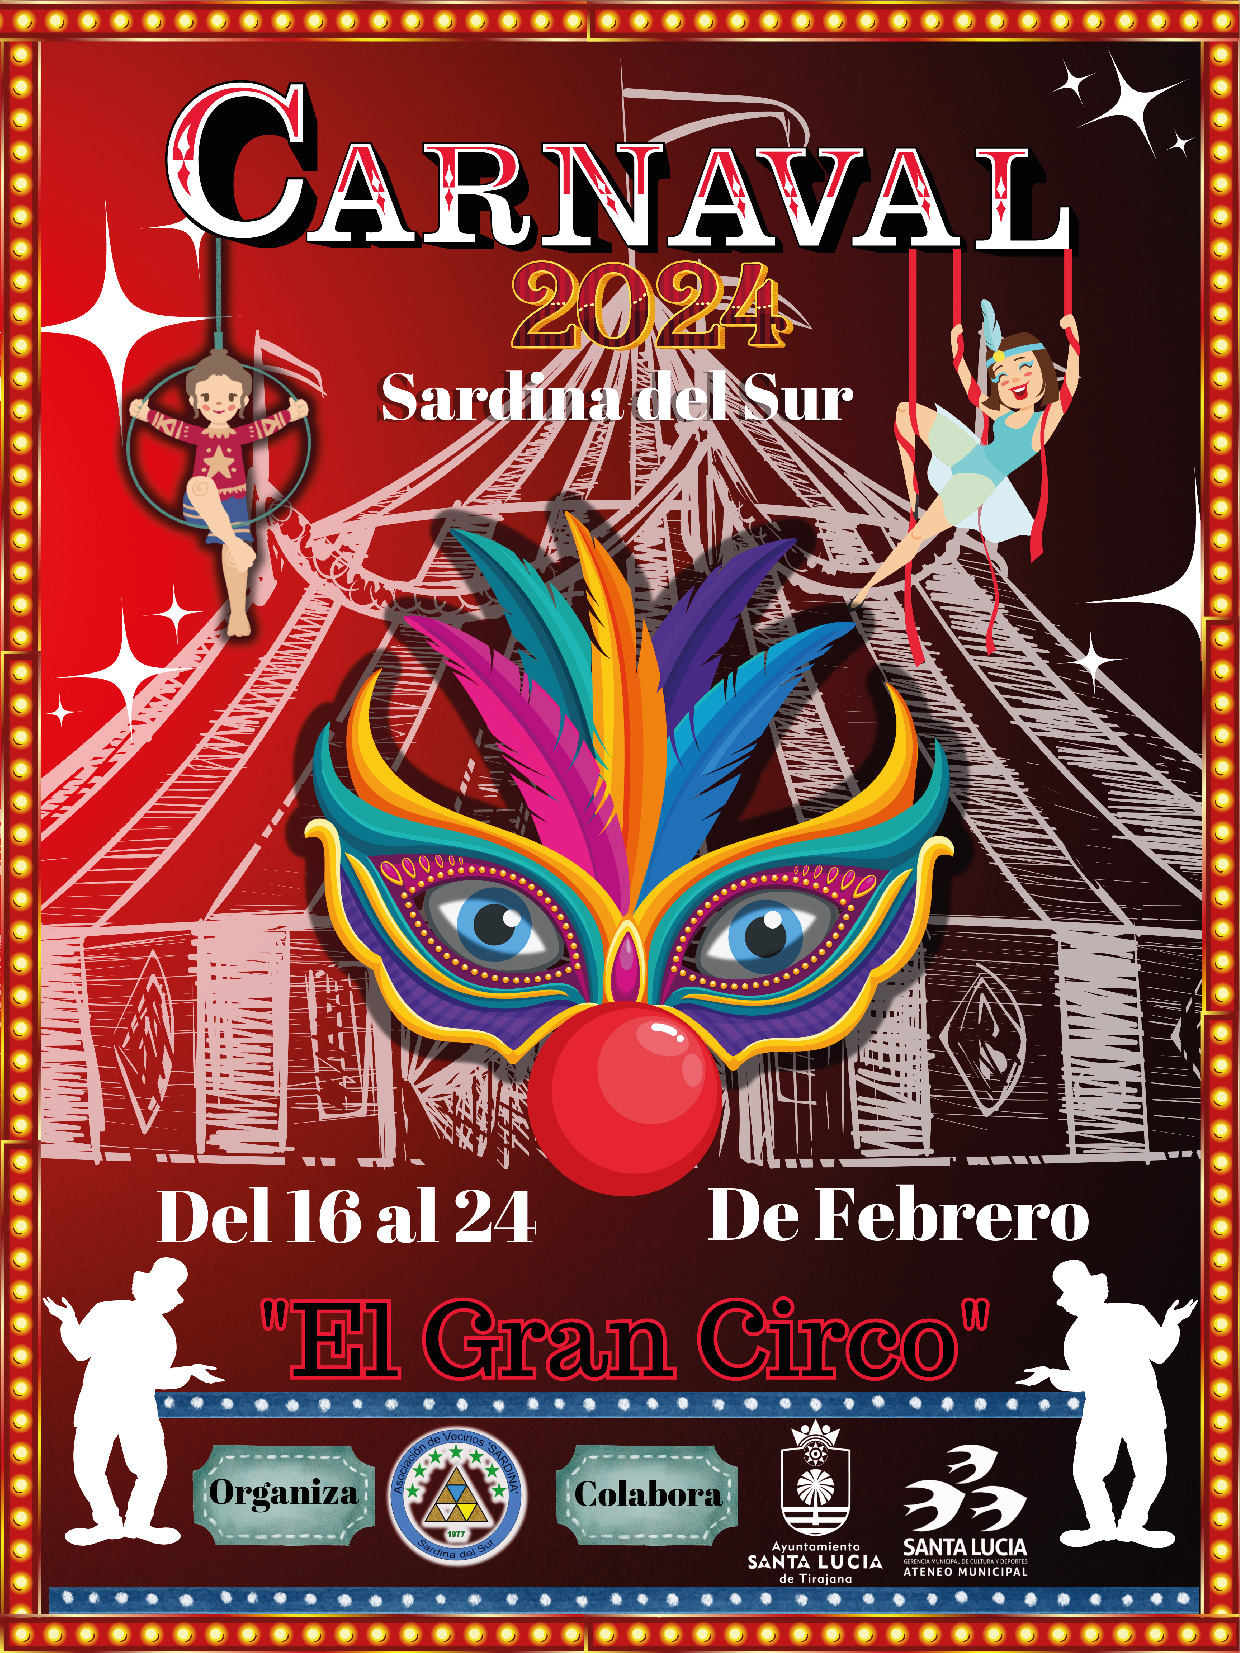 El pasacalles infantil abre este viernes el Carnaval de Sardina del Sur dedicado al Circo